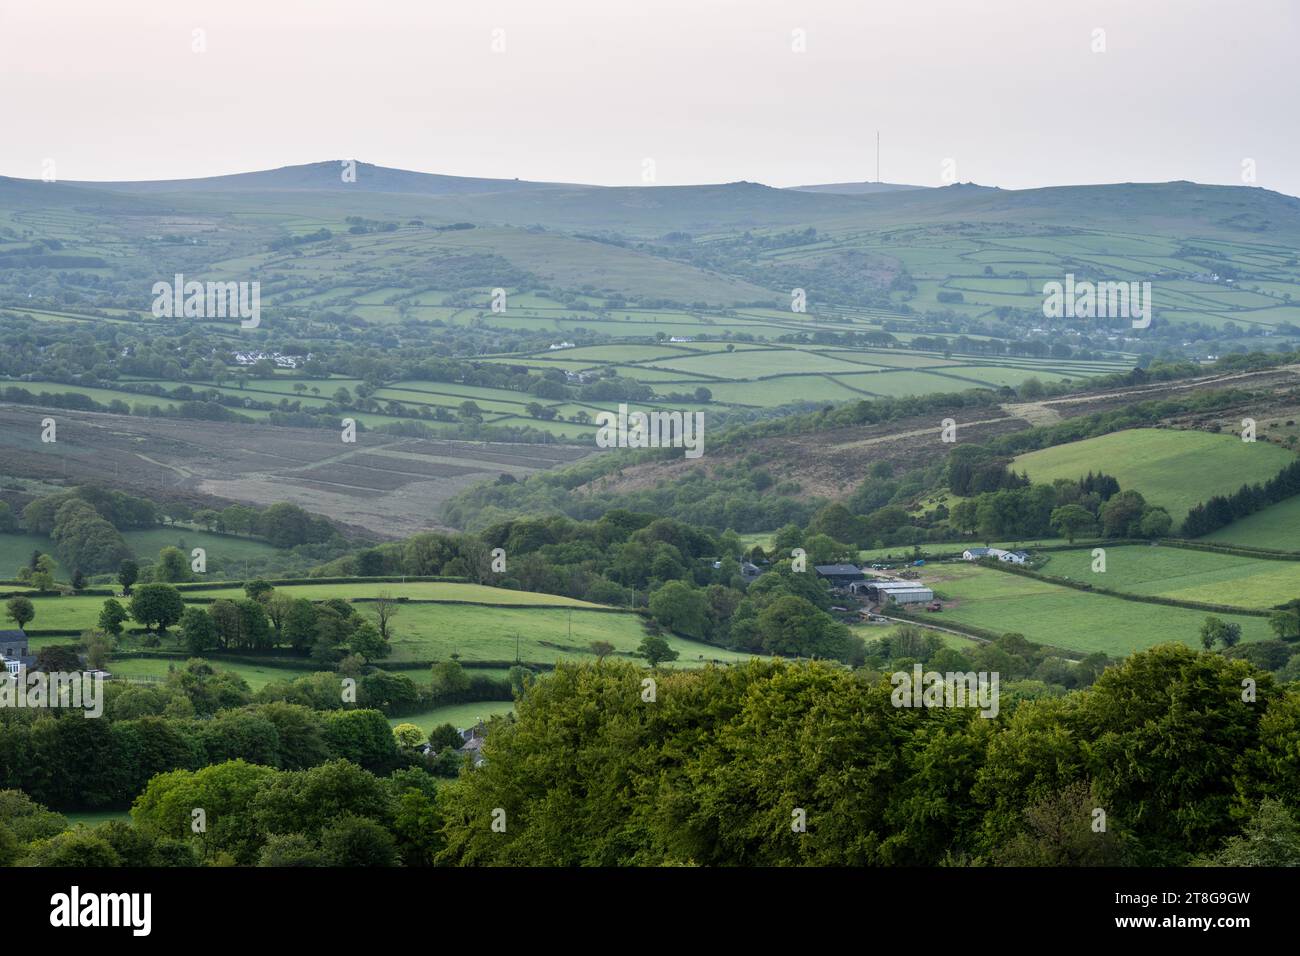 Das Tavy Valley und die westlichen Toren von Dartmoor in West Devon strahlen am Morgen. Stockfoto